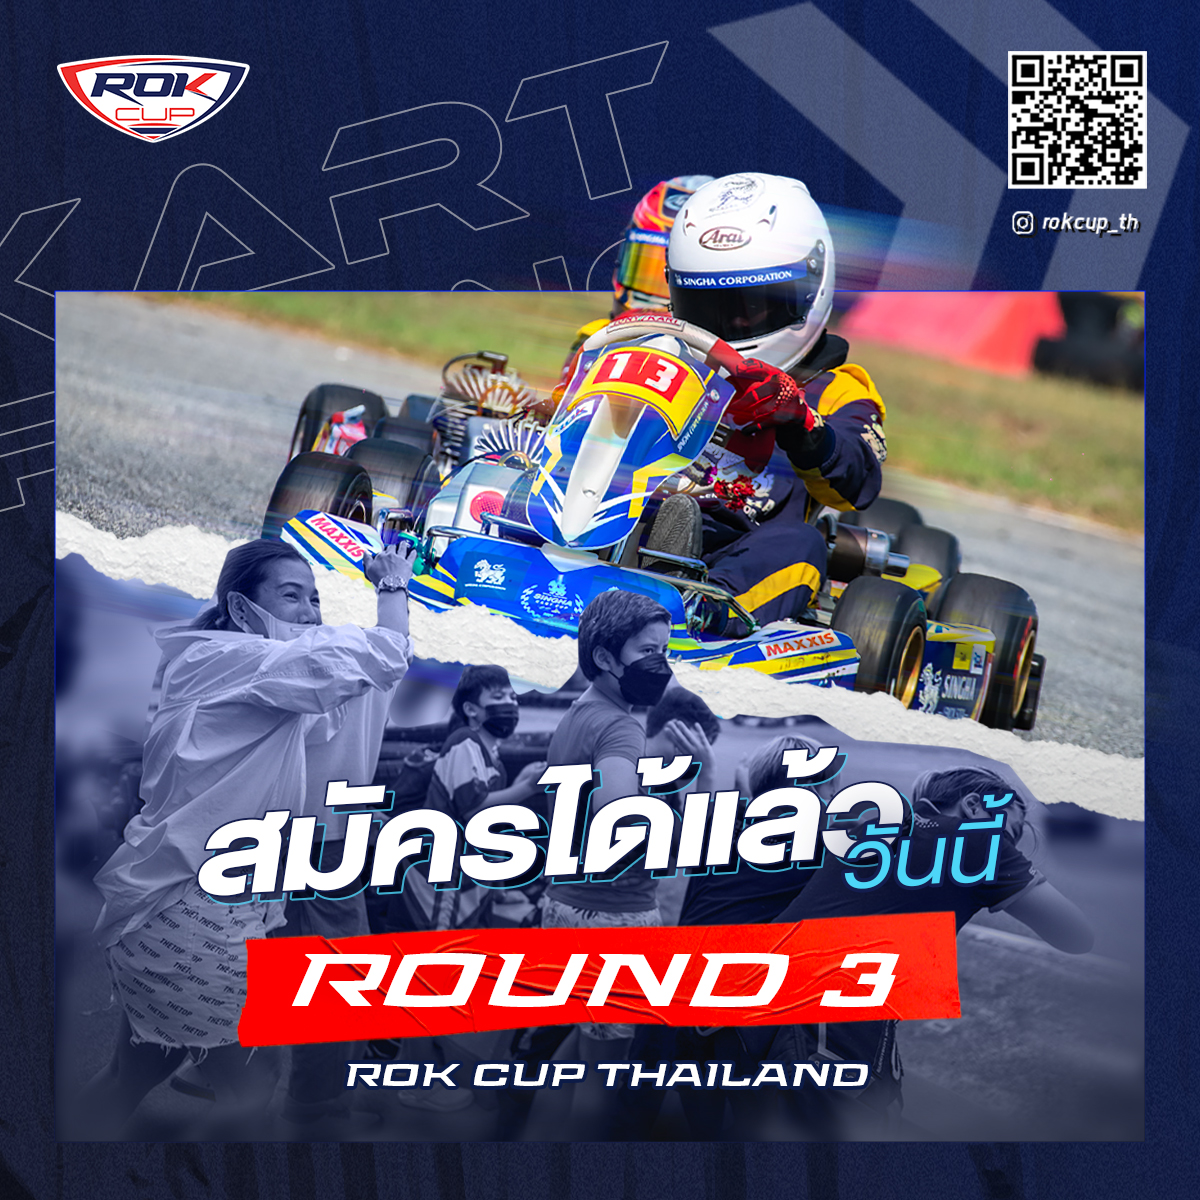 📢 ขอเชิญลงทะเบียนเข้าร่วมการแข่งขันรายการ ROK CUP THAILAND 2022 สนามที่ 3  ระหว่างวันที่ 16-17 กรกฎาคม 2565 ณ สนามพีระ คาร์ท จังหวัดชลบุรี  ภายในวันพุธที่ 11 กรกฎาคม 2565